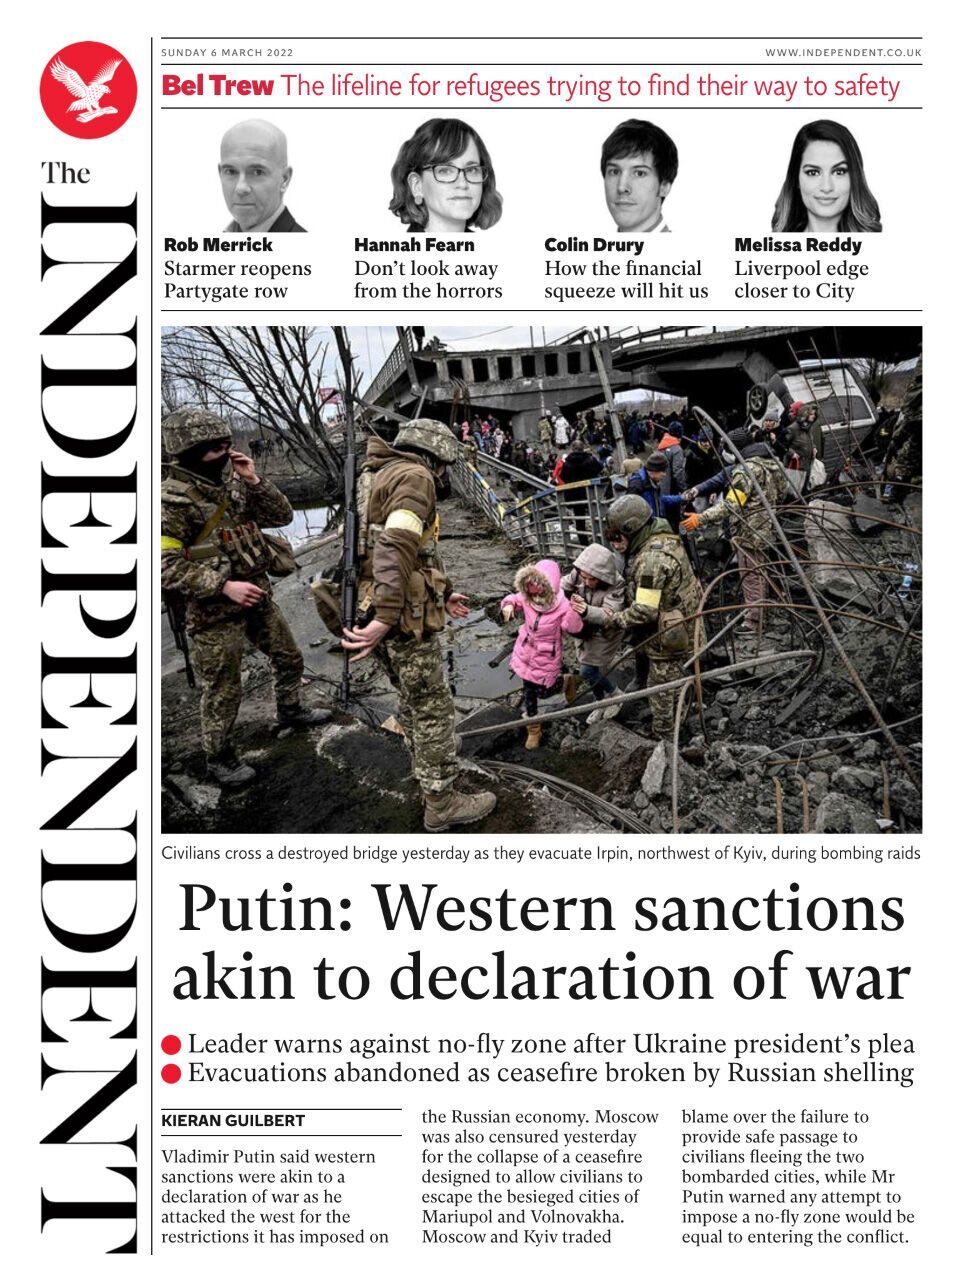 Західні санкції схожі на оголошення війни